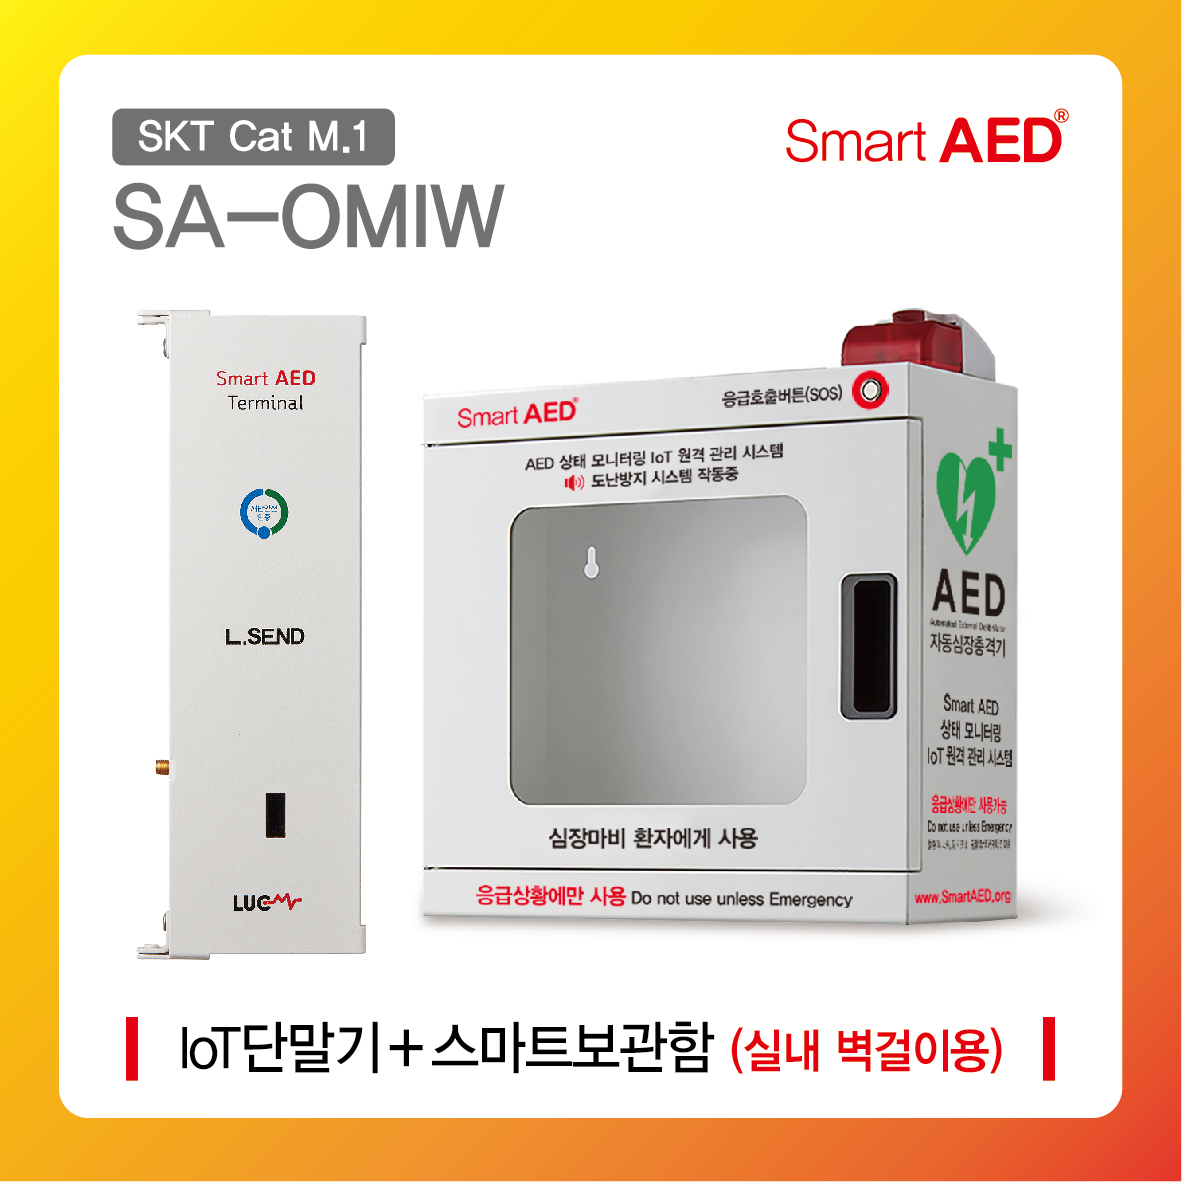 [ SA-OMIW ] 스마트 AED 통합모니터링 장치 및 보관함 (실내 벽걸이형)